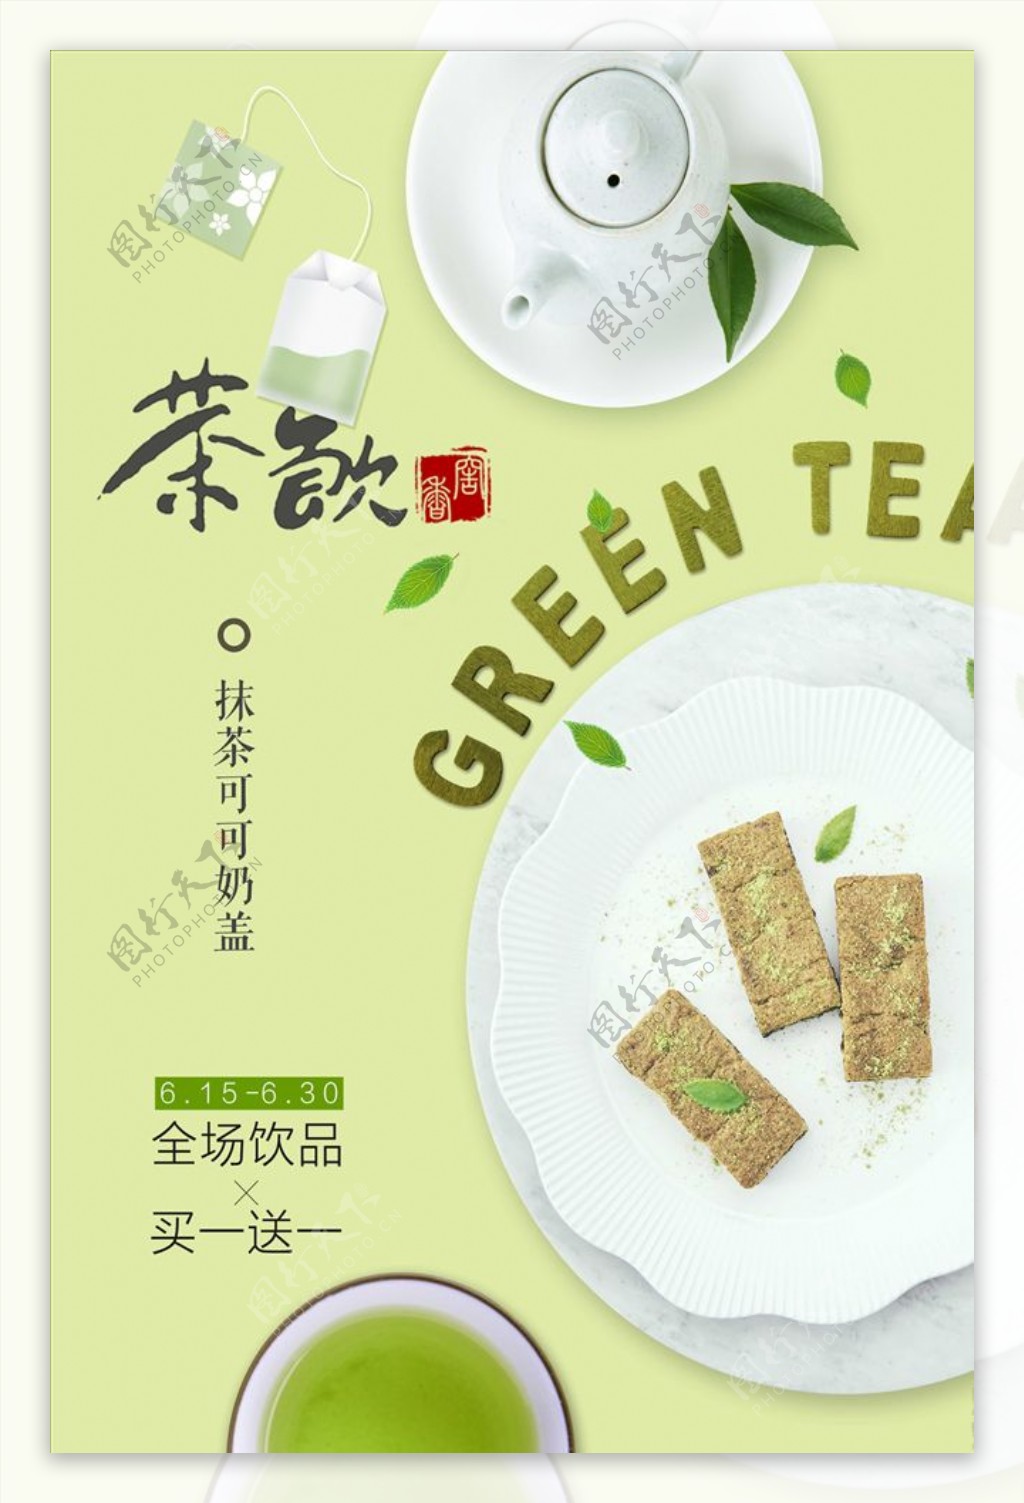 精品茶文化海报设计